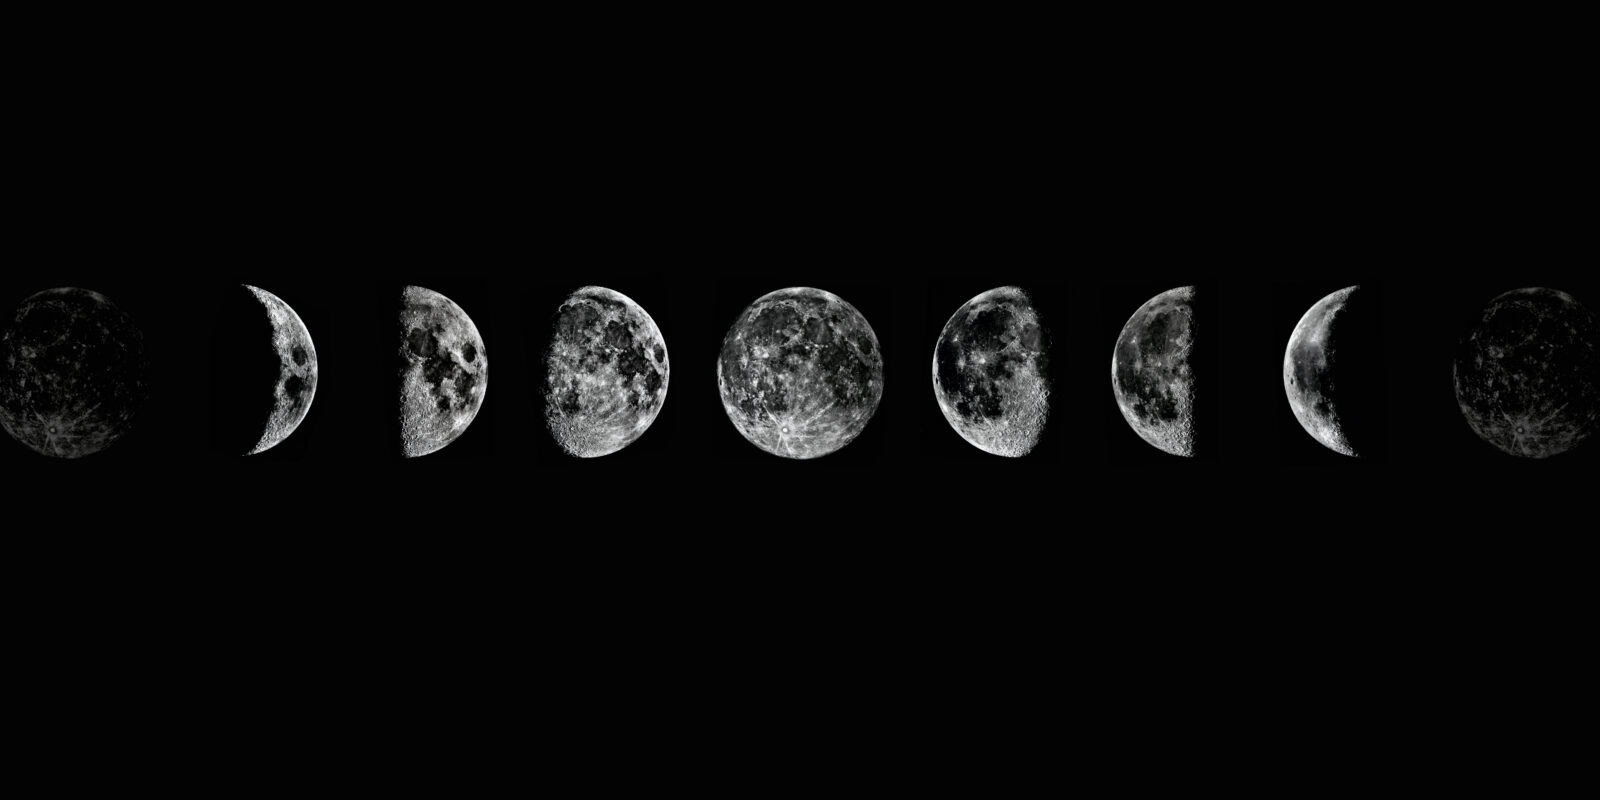 حقائق مثيرة للاهتمام حول القمر .. ستجعلك تنظر لسماء الليل بطريقة مختلفة